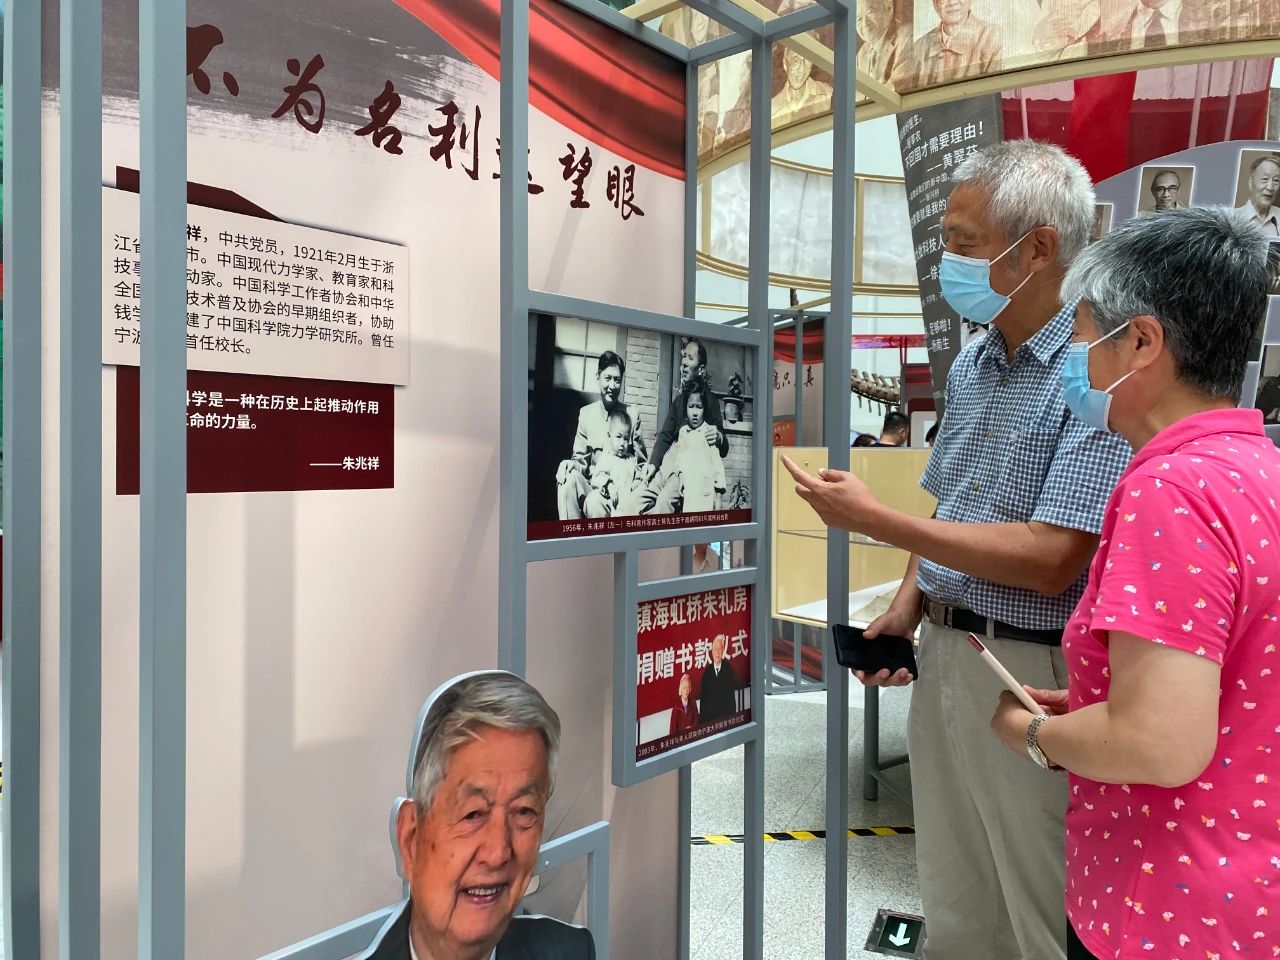 与党同龄的科学家们,“赤子丹心——与党同龄的科学家”主题展览,中国科技馆